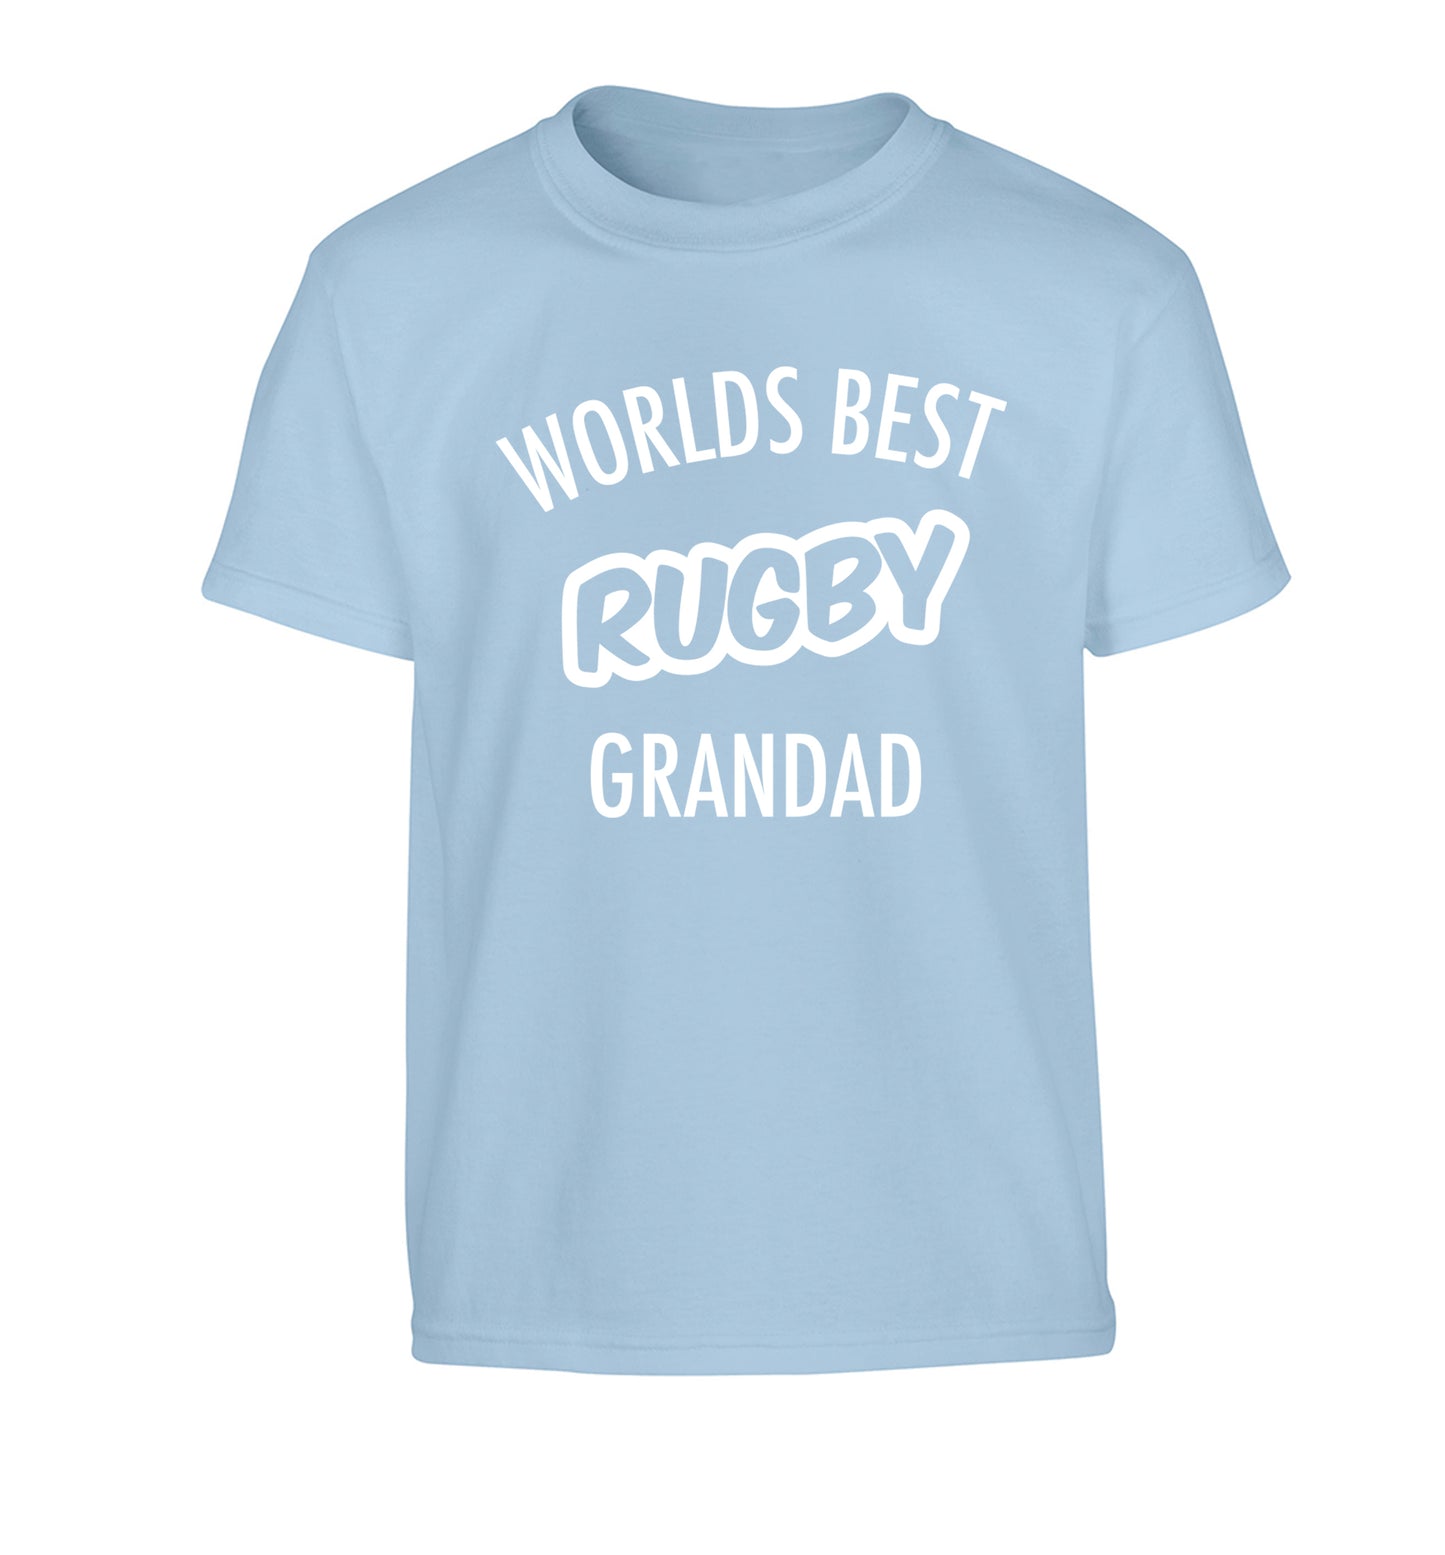 Worlds best rugby grandad Children's light blue Tshirt 12-13 Years